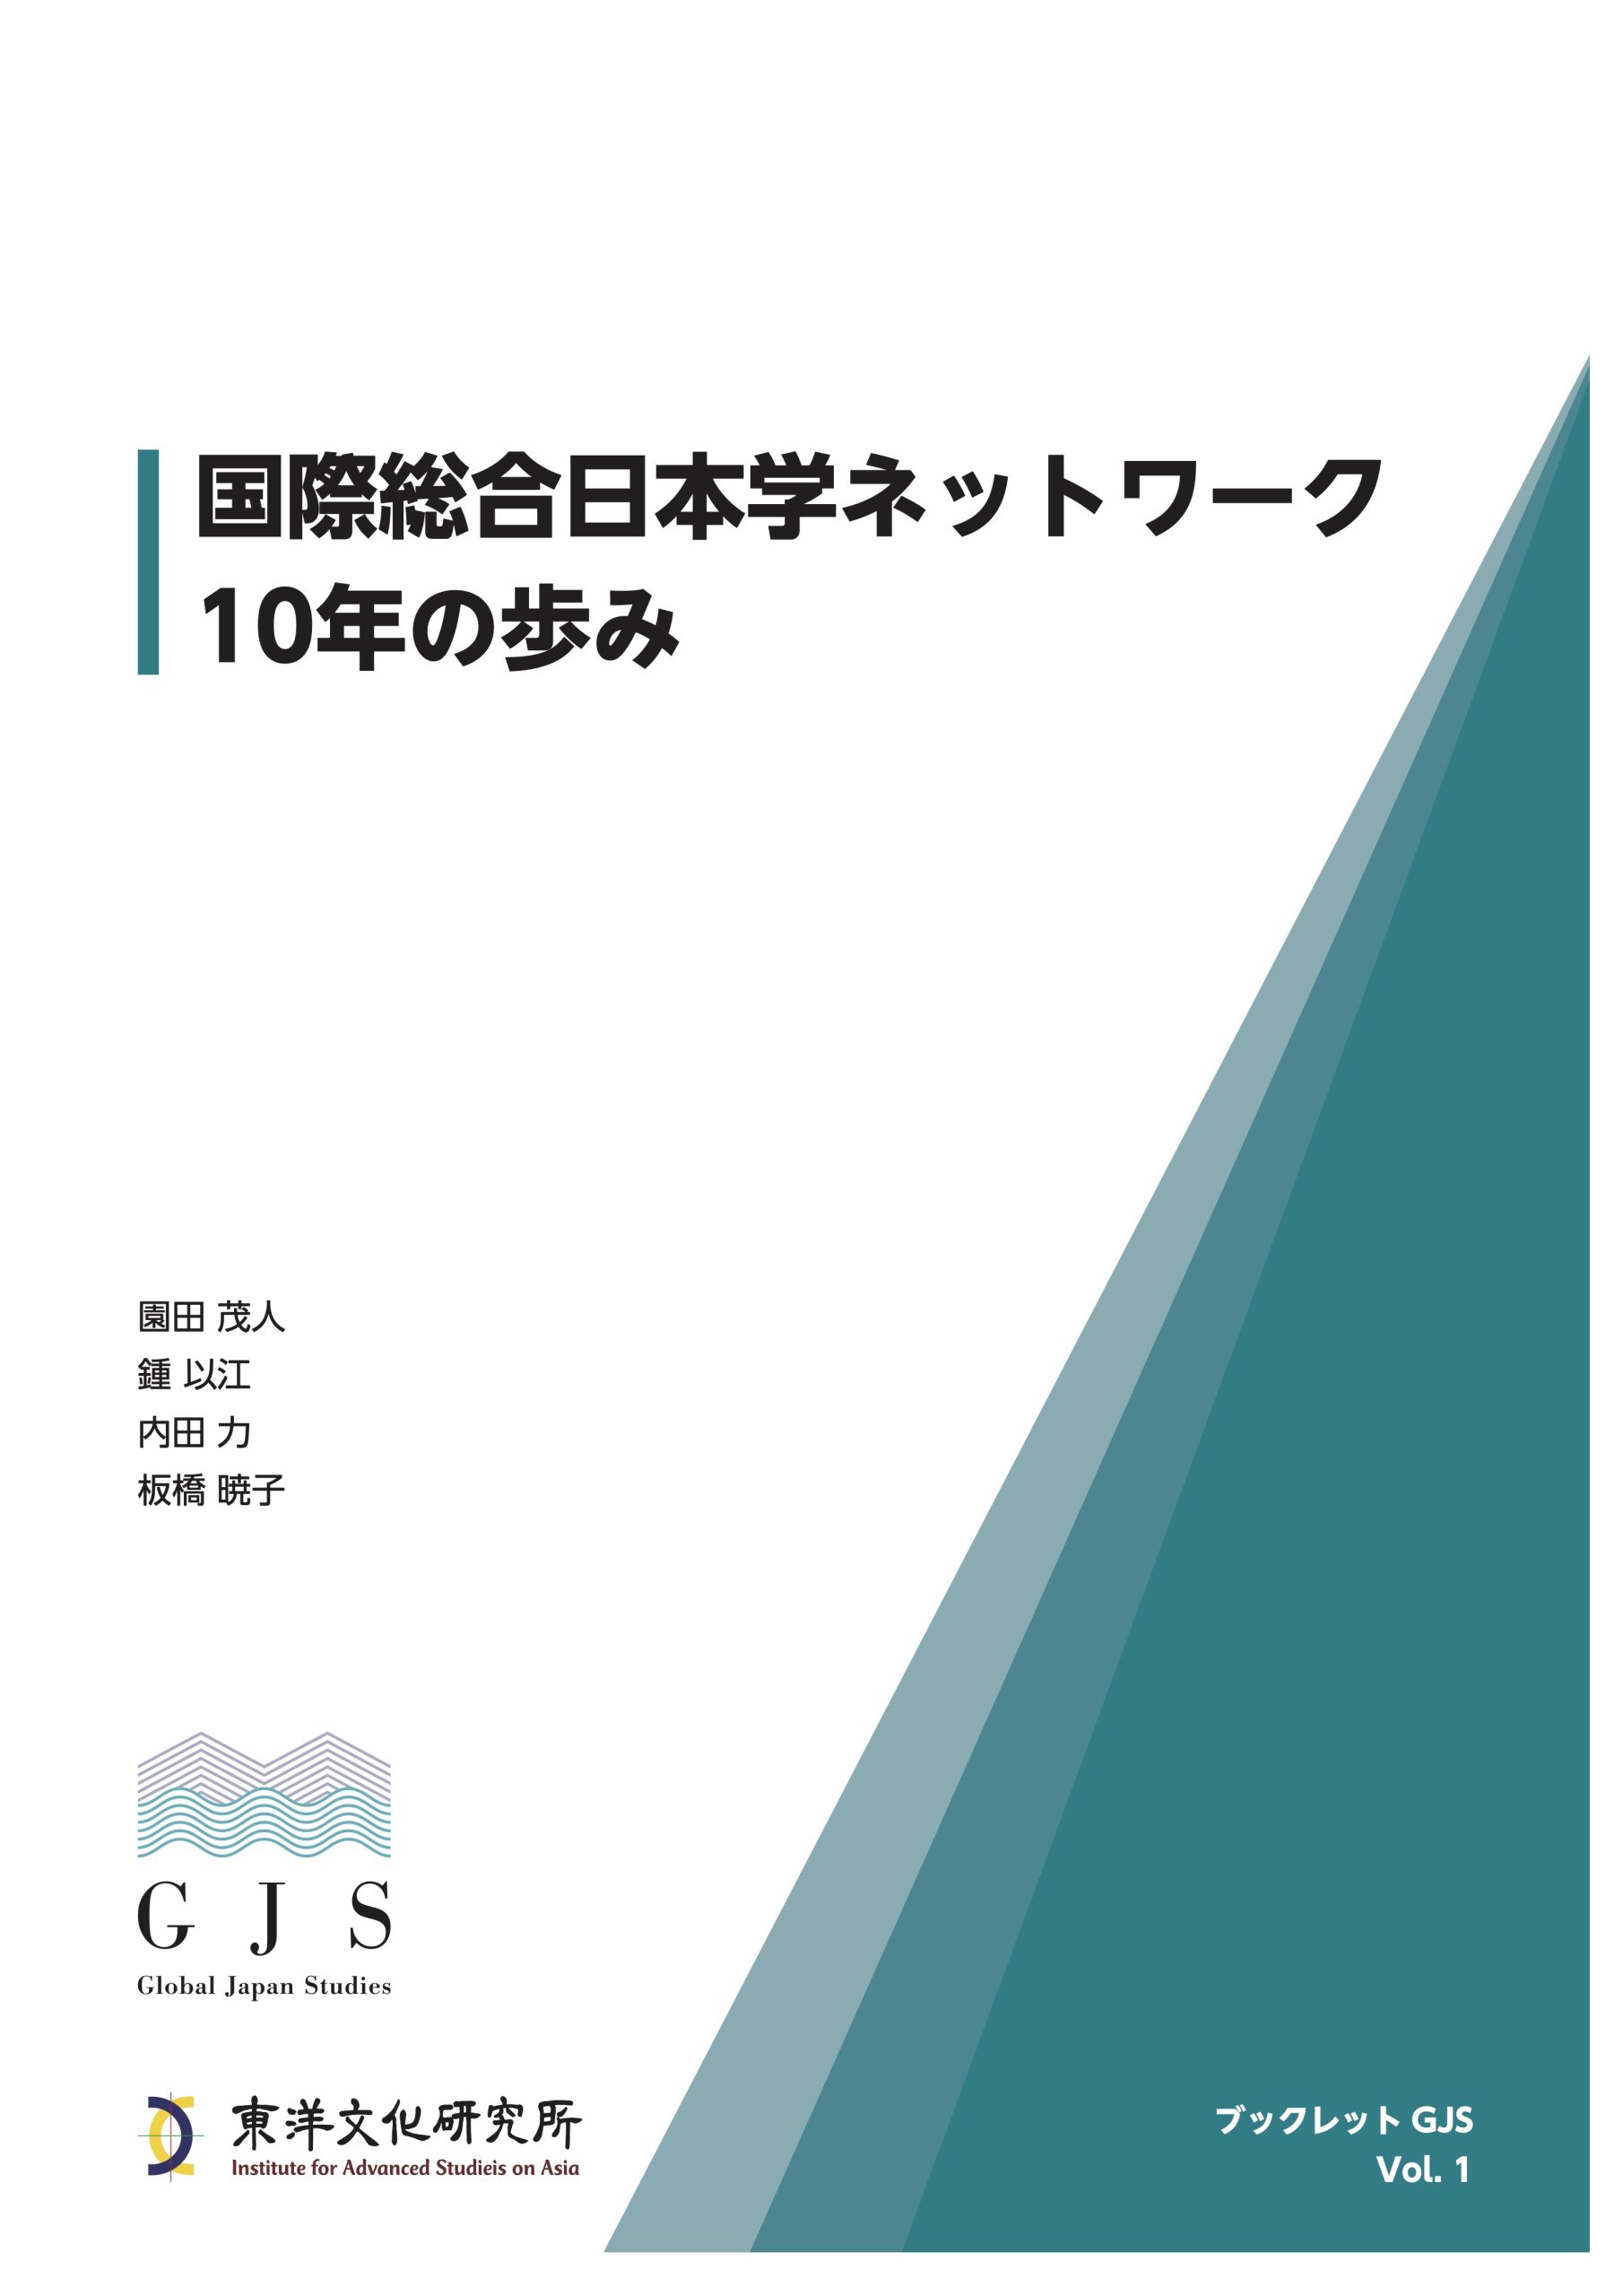 Booklet GJS Vol. 1